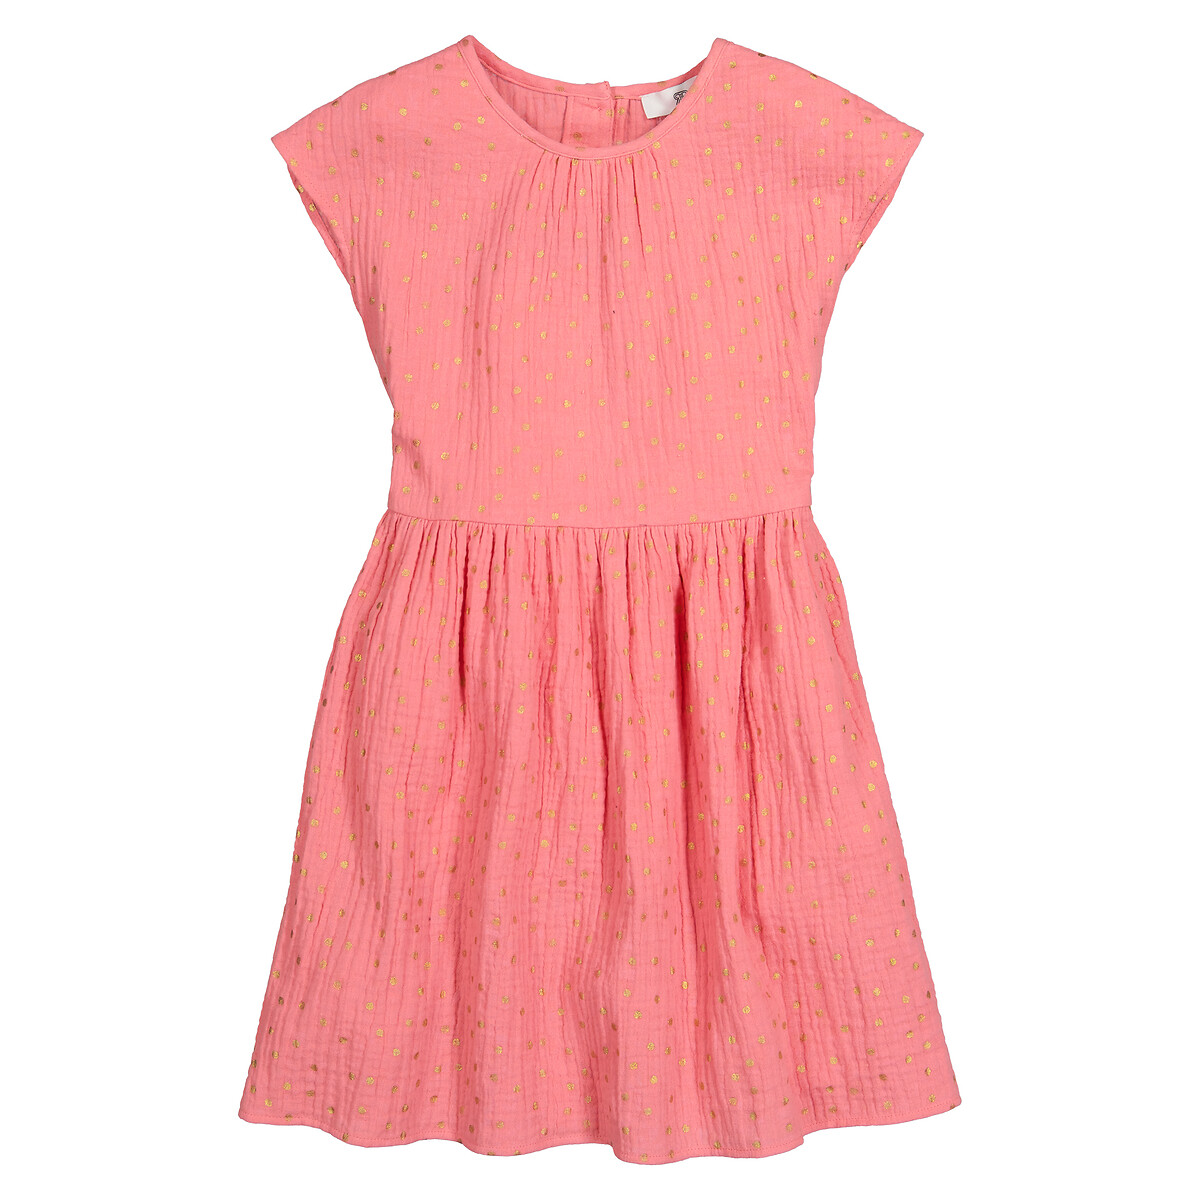 Платье С короткими рукавами из хлопчатобумажной газовой ткани с принтом в горошек 7 лет - 120 см розовый LaRedoute, размер 7 лет - 120 см - фото 3